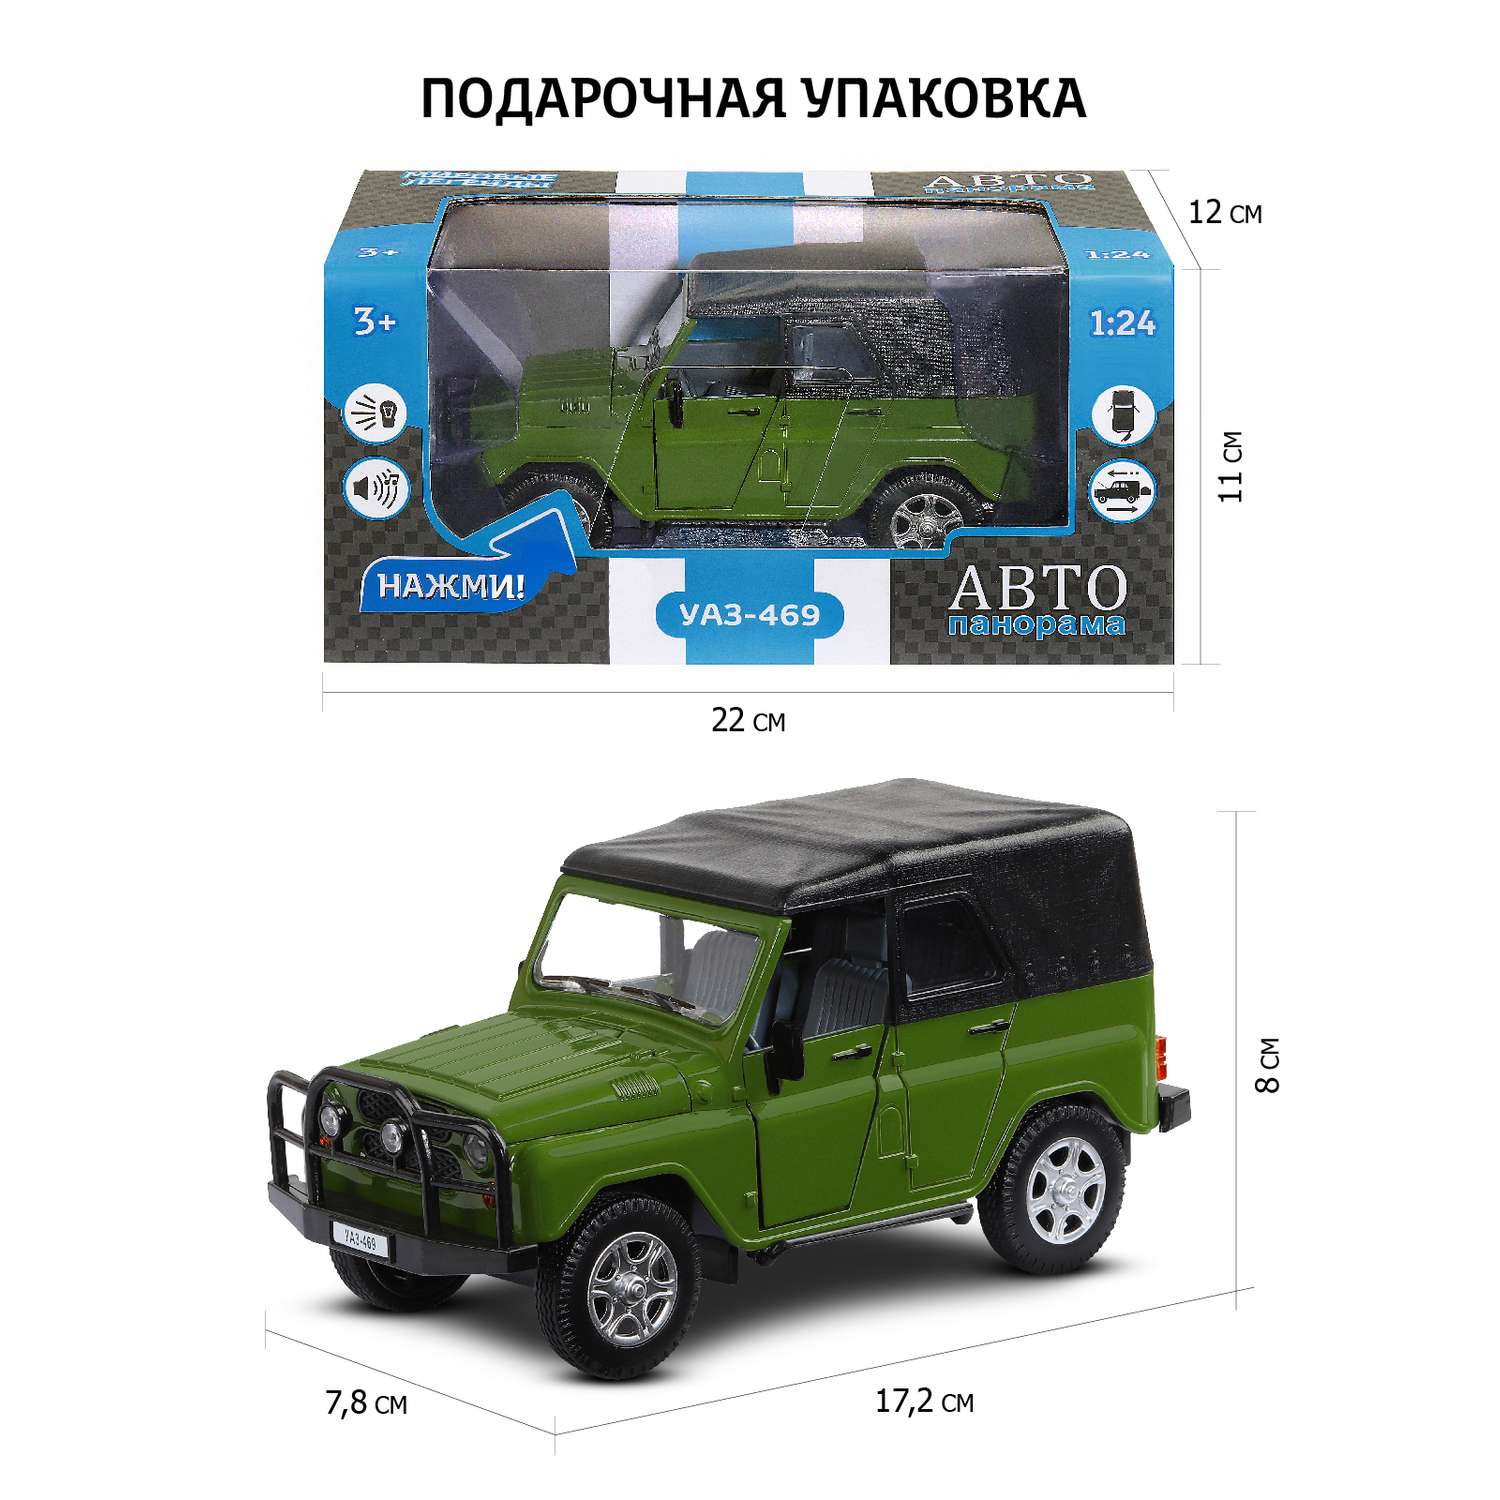 Машинка металлическая АВТОпанорама игрушка детская УАЗ-469 1:24 зеленый JB1200214 - фото 3